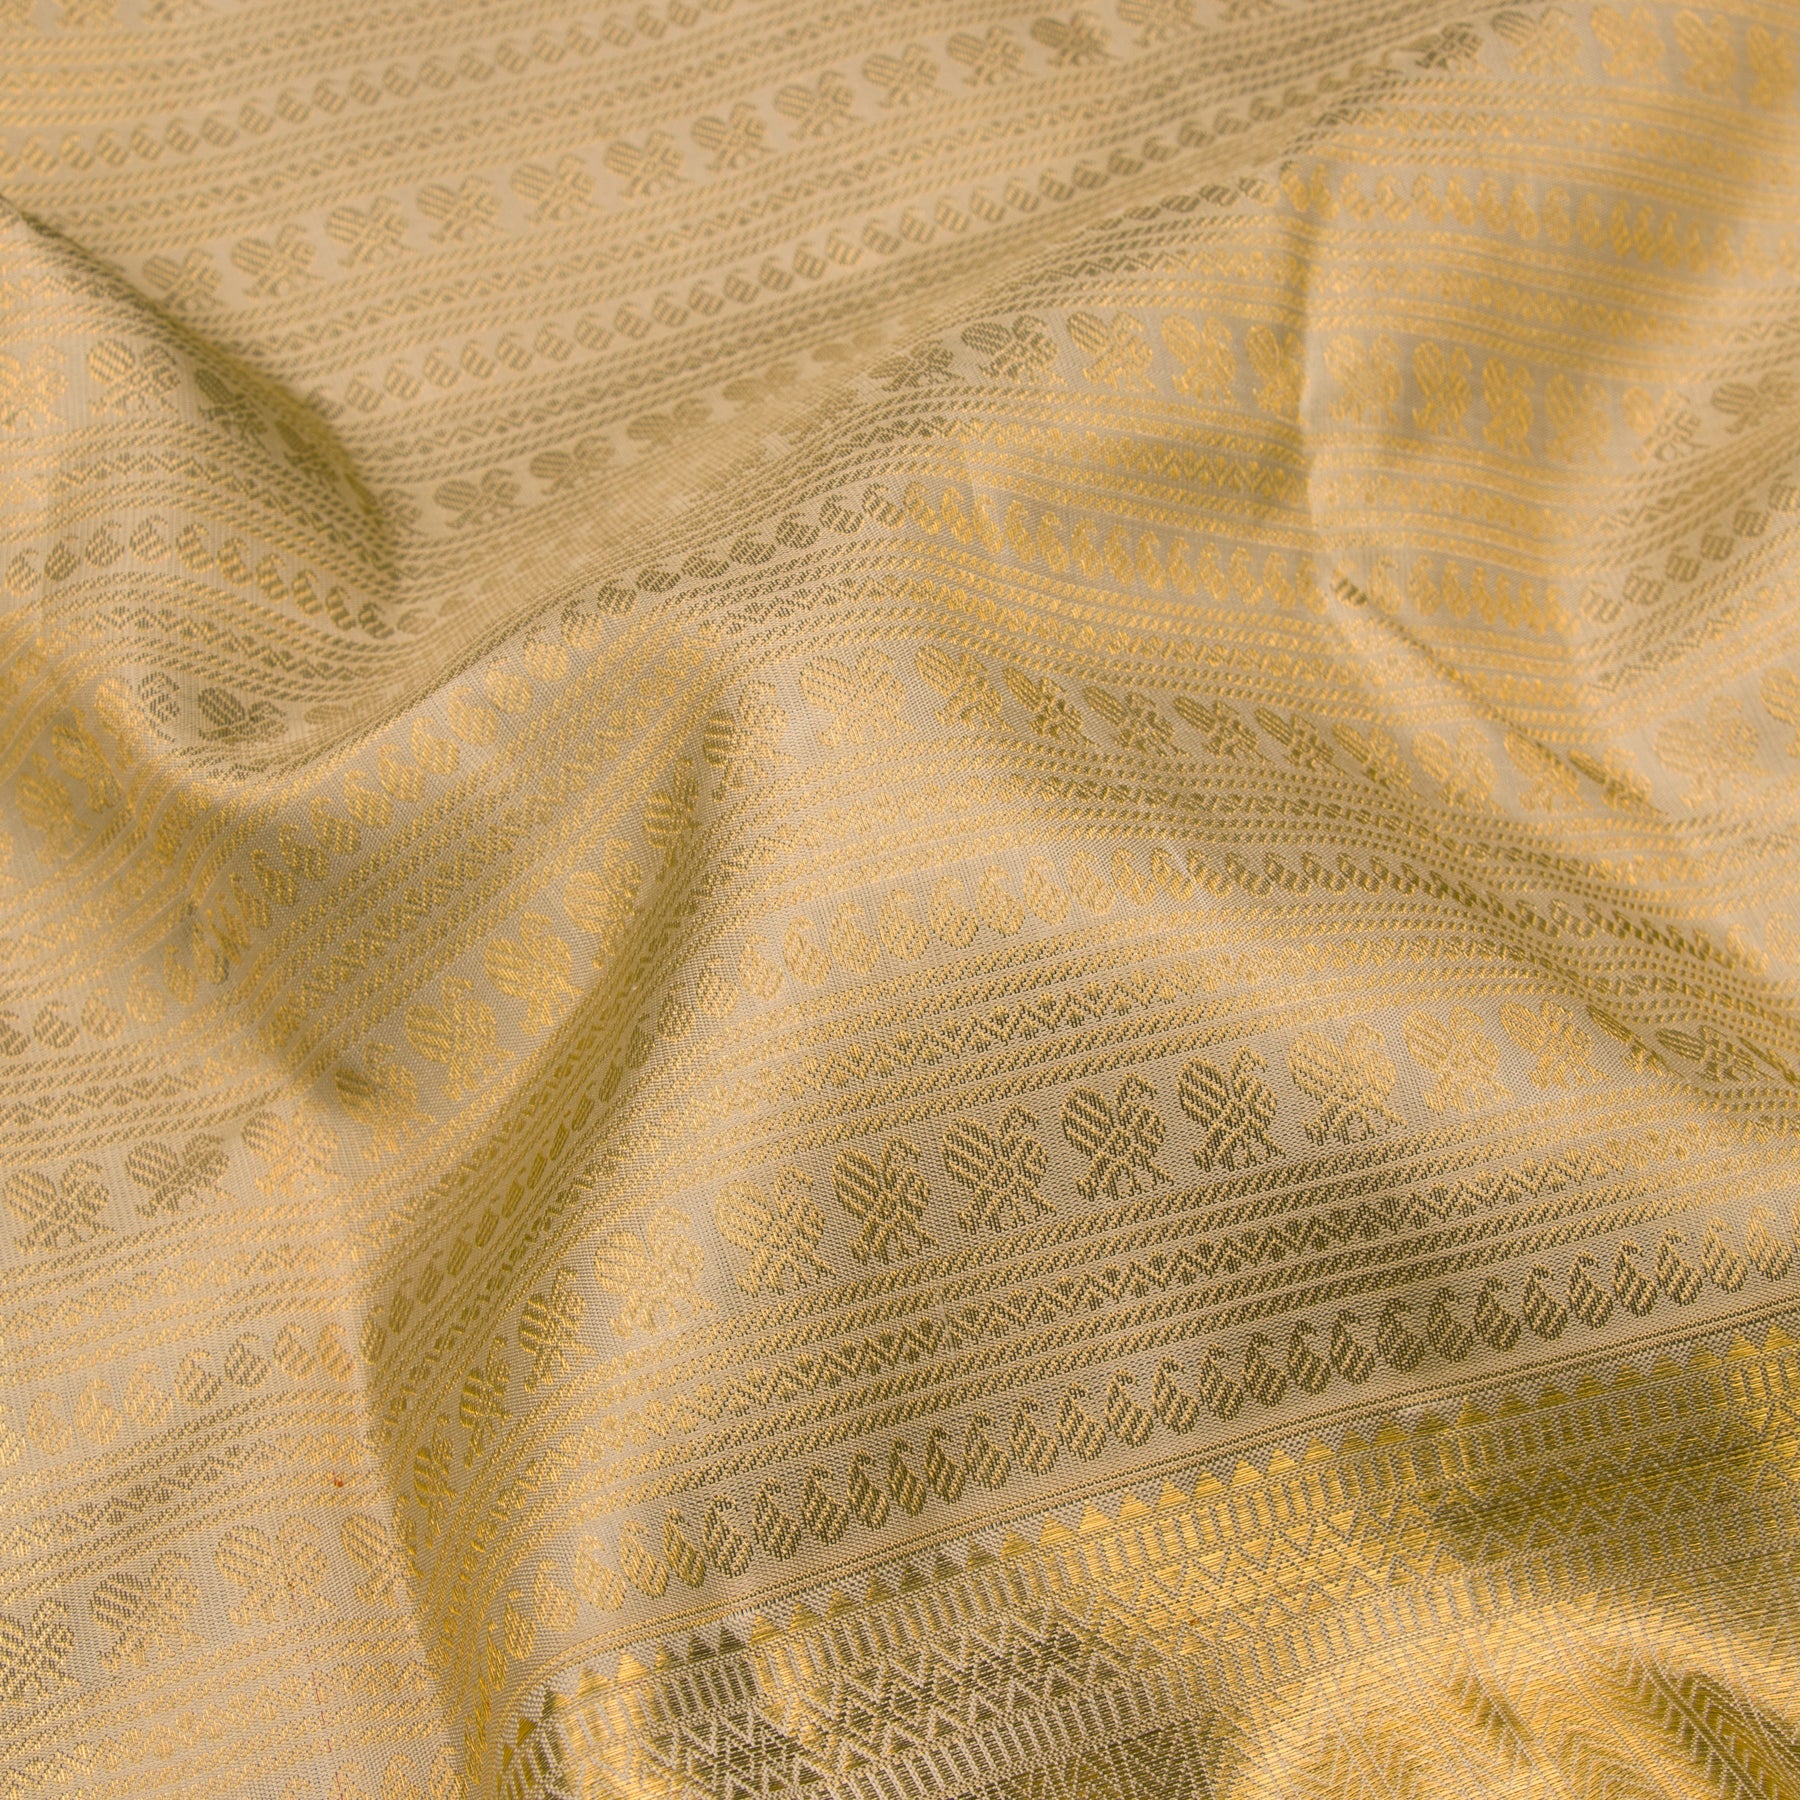 Kanakavalli Kanjivaram Silk Sari 23-110-HS001-09204 - Fabric View